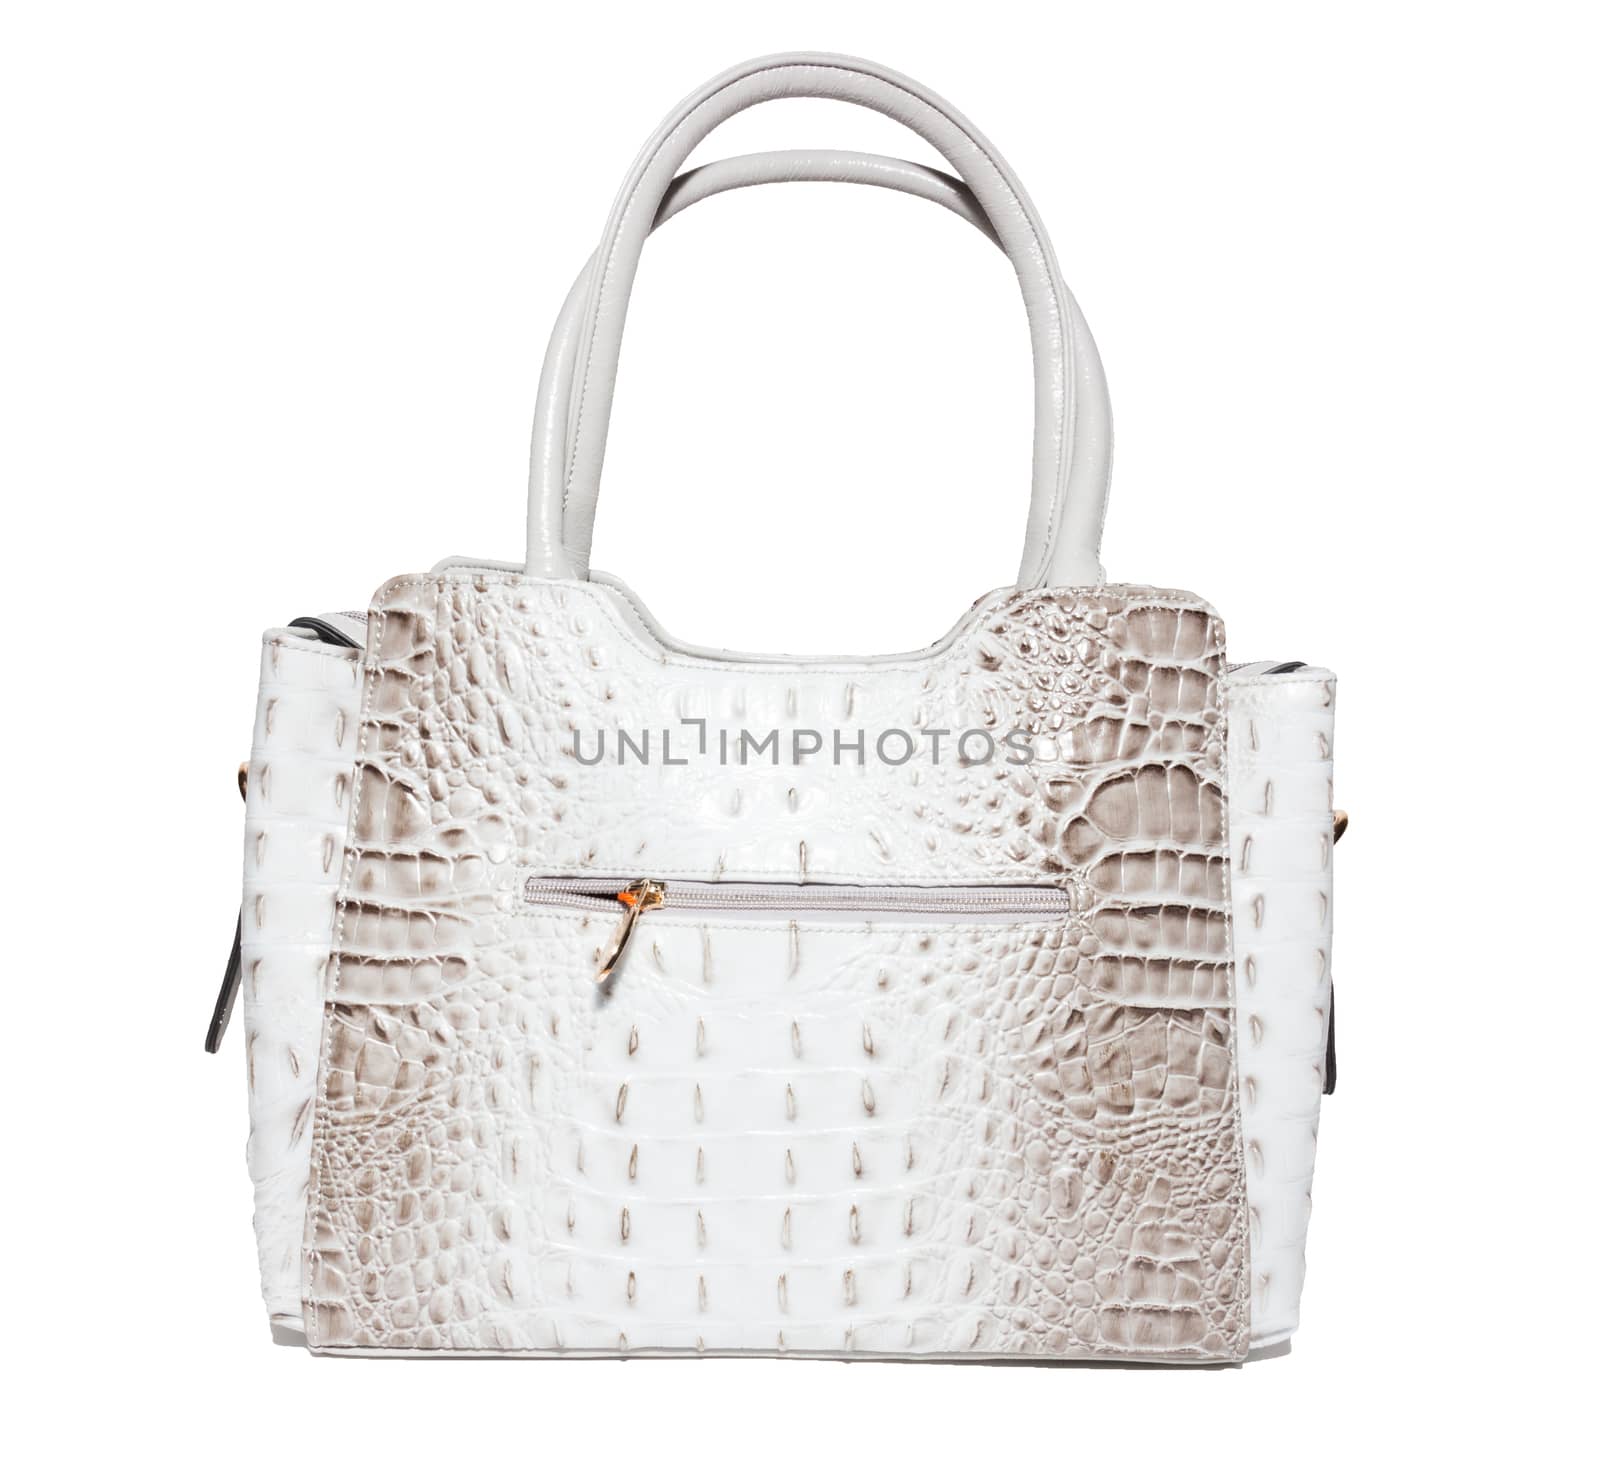 female handbag on a white background by AlexBush